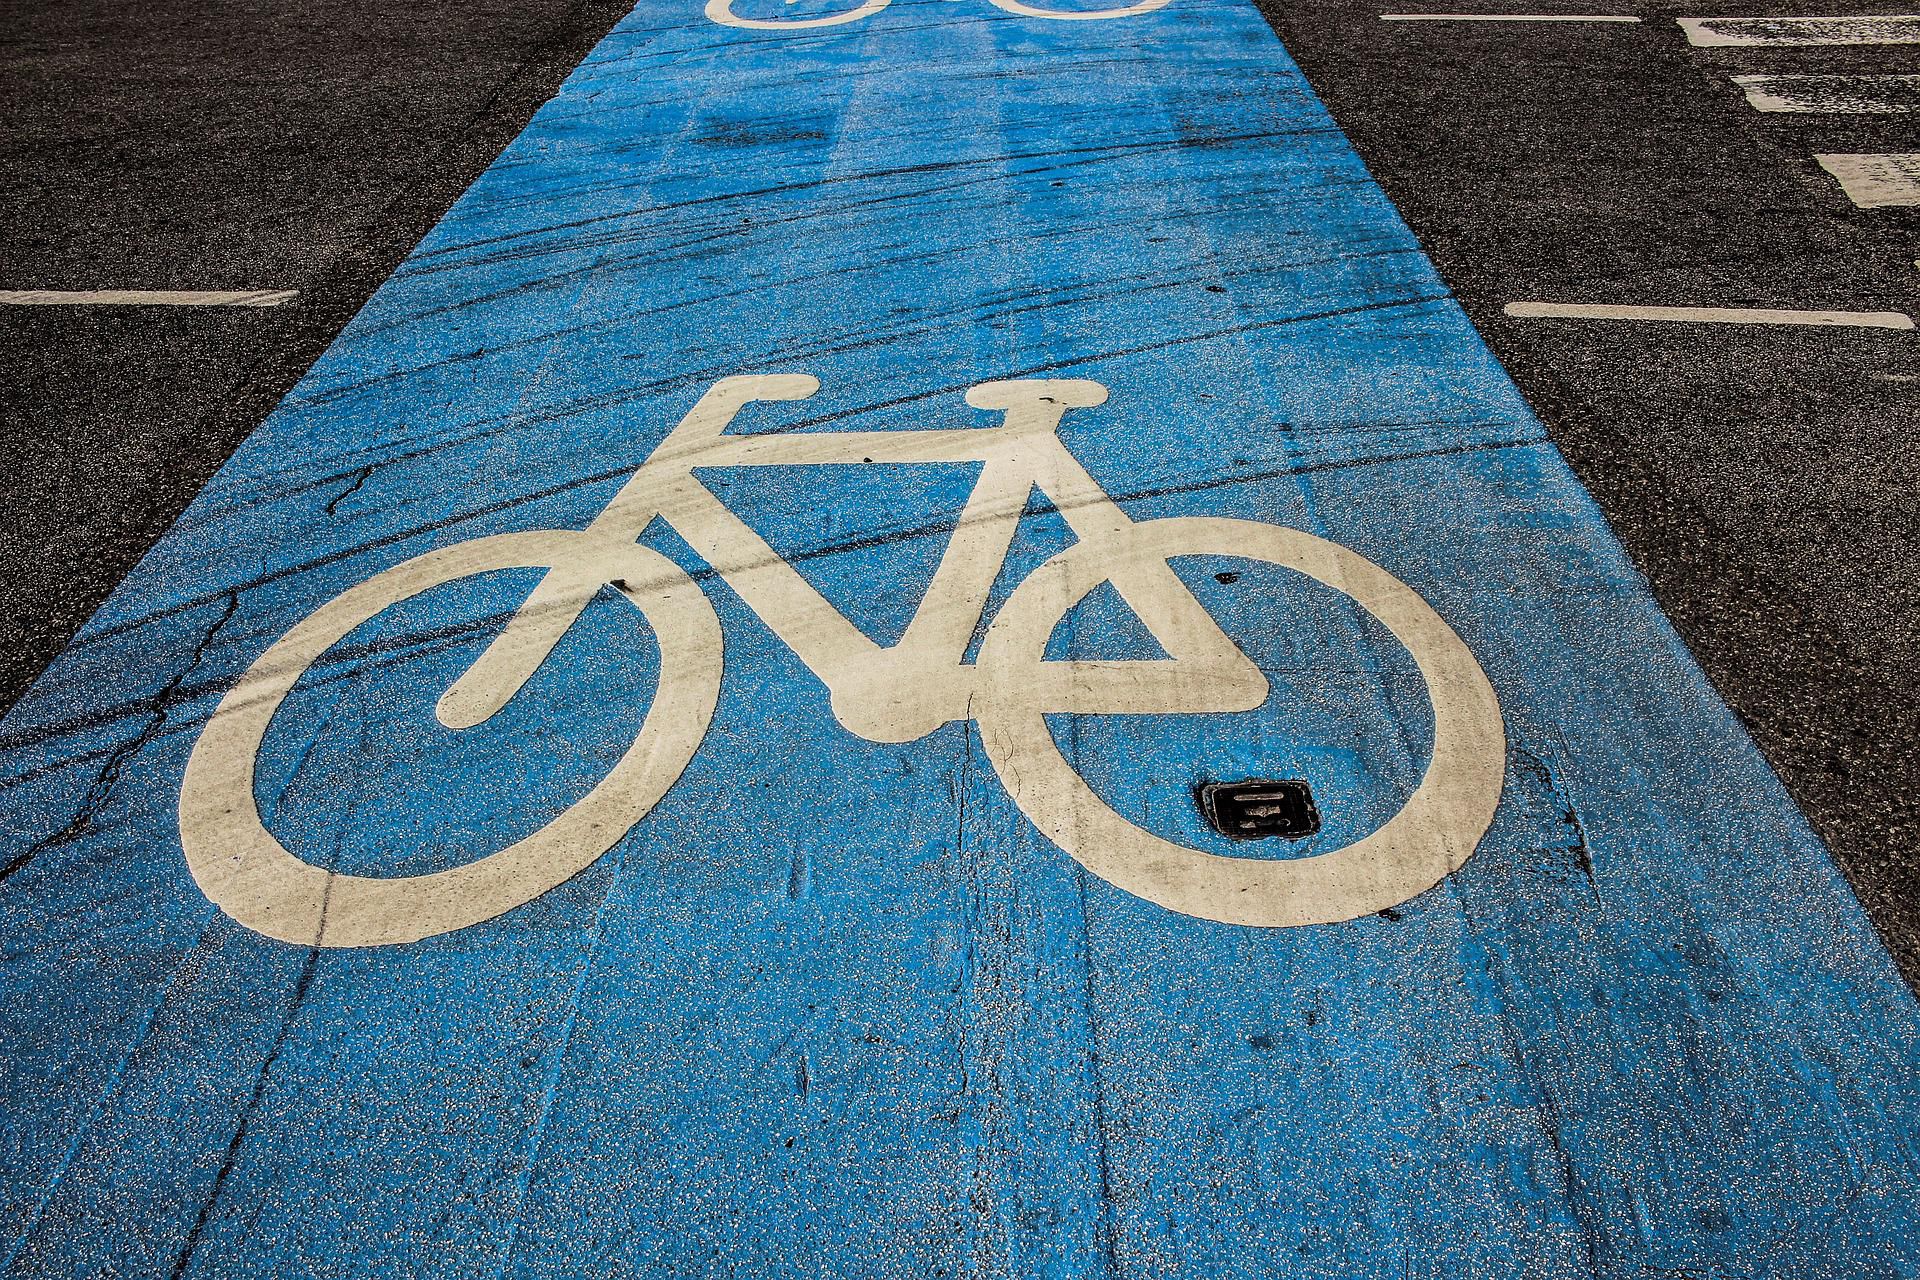 ścieżka rowerowa oznakowana znakiem białego roweru na niebieskim tle